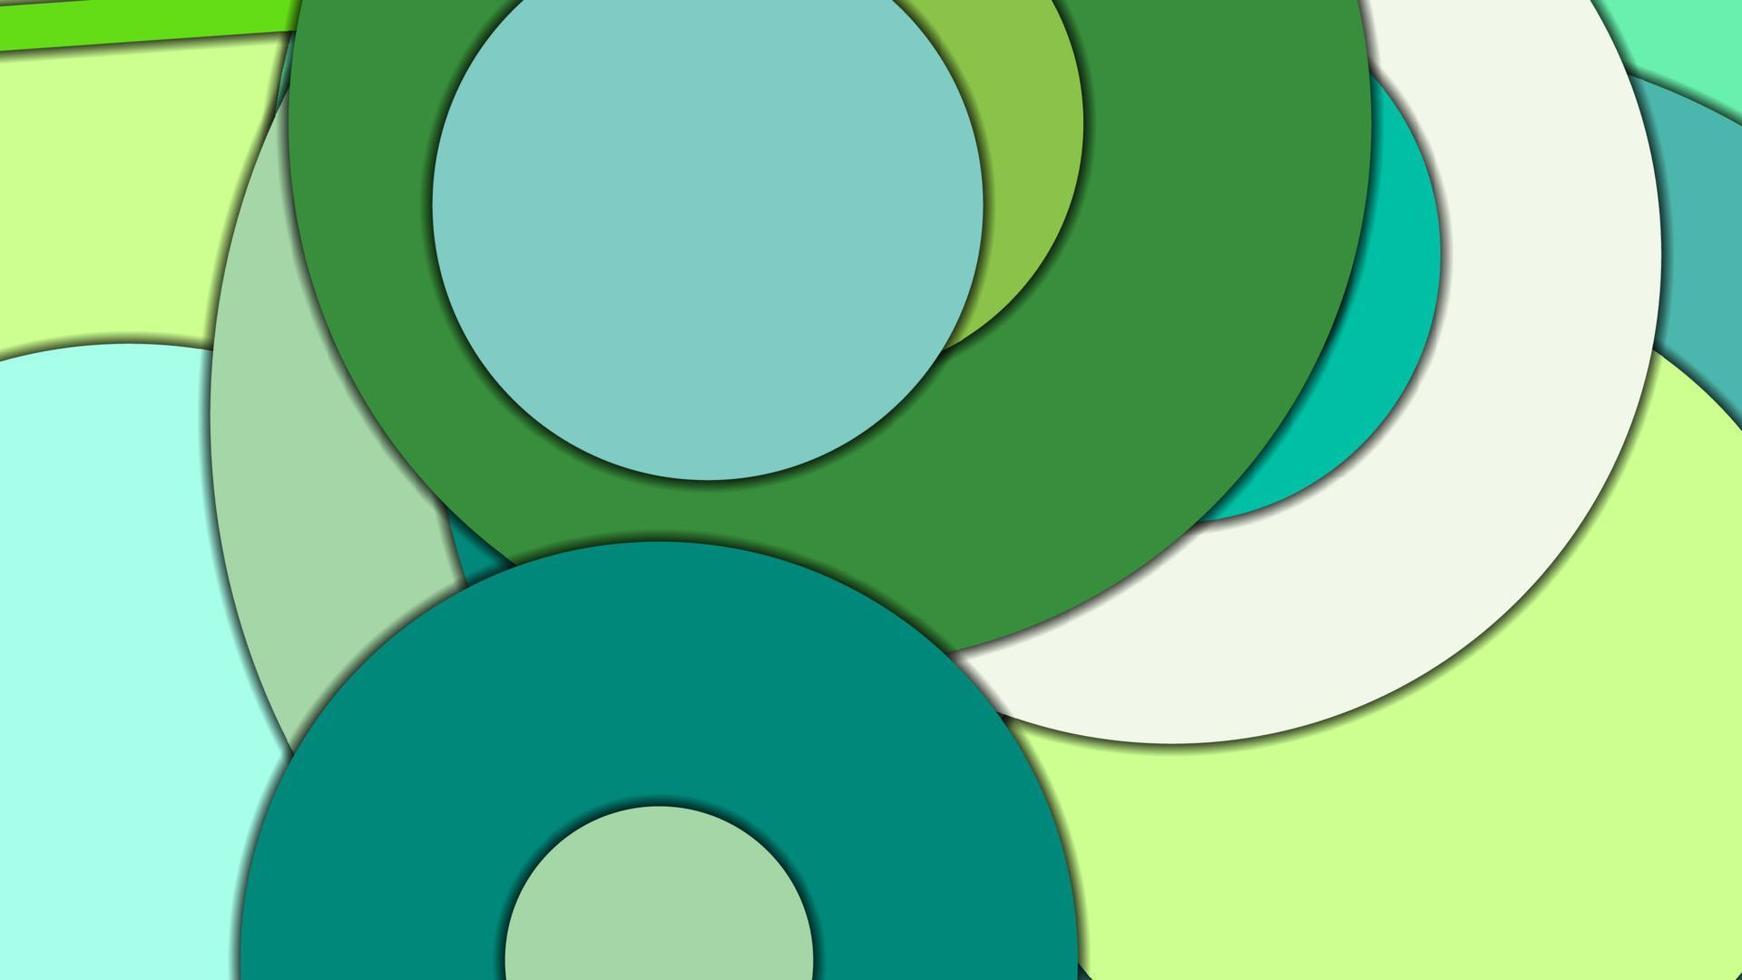 fundo de vetor geométrico abstrato em estilo de design de material com uma paleta harmonizada limitada, com círculos concêntricos e retângulos girados com sombras, imitando papel cortado.